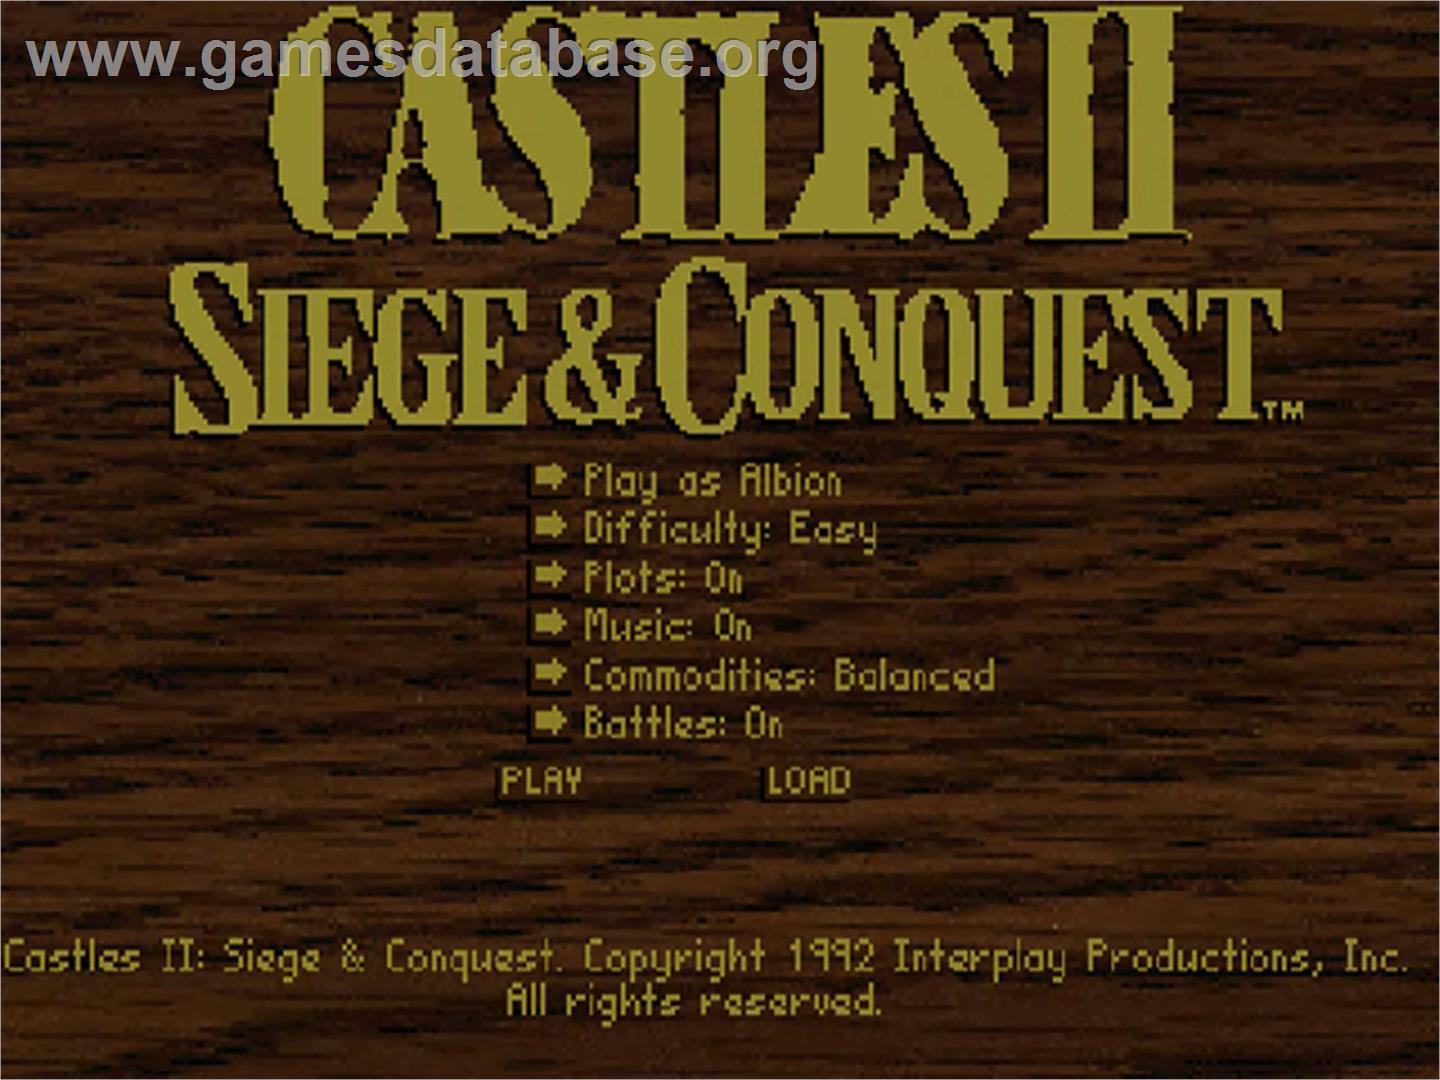 Castles 2: Siege & Conquest - Commodore Amiga CD32 - Artwork - Title Screen